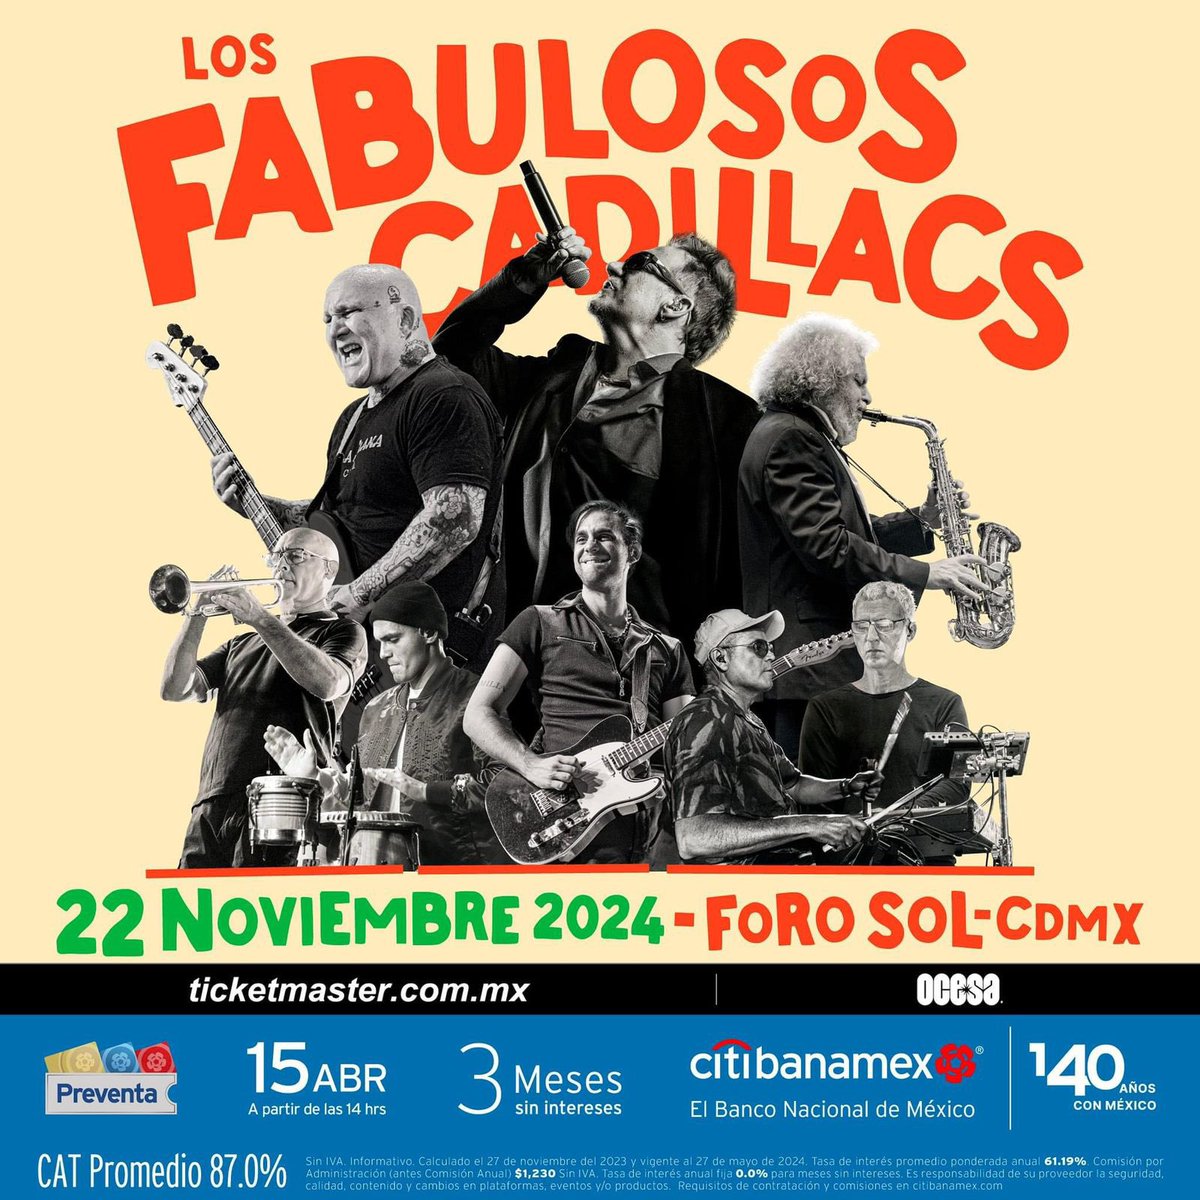 . @lfcoficial están de vuelta en el Foro Sol el 22 de noviembre.🔙🎤🎶

¿Qué esperan ver en este próximo concierto?👀

#fabulososcadillacs #forosol #estadiognp #conciertosmexico #conciertoscdmx